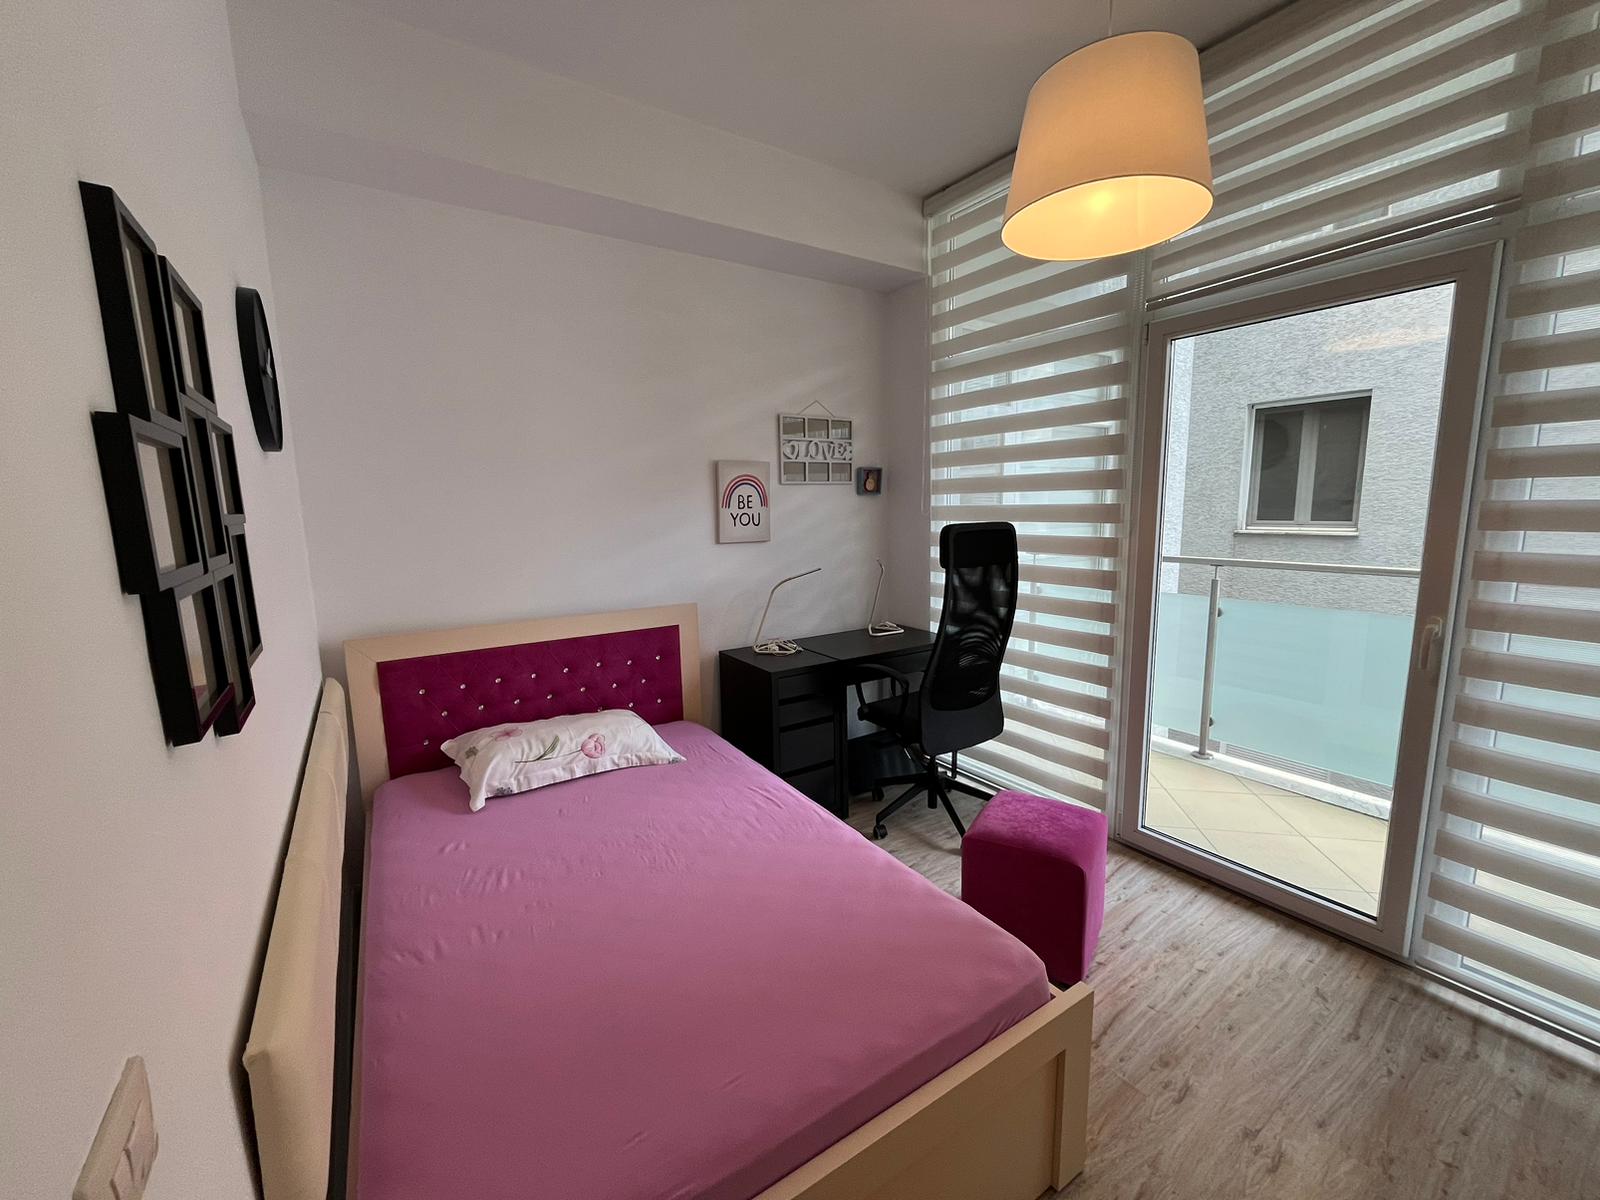 Foto e Apartment në shitje Kika 2, Komuna e Parisit, Tiranë